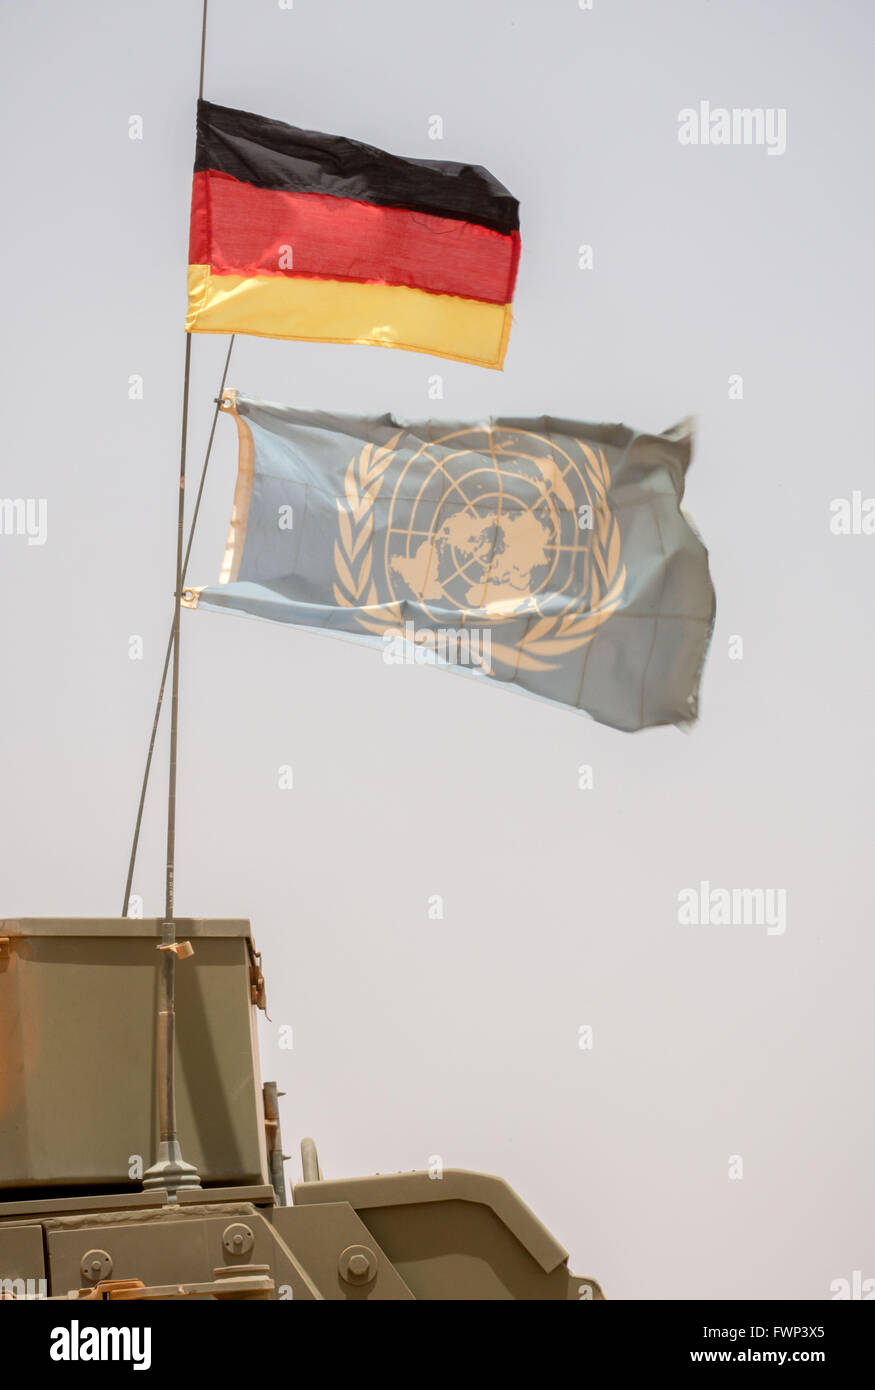 Eine deutsche Nationalflagge und eine Flagge der Vereinten Nationen (UN) sind auf ein Fahrzeug der deutschen bewaffneten Kräfte (Bundeswehr) montiert, die Teil der UN-Mission MINUSMA in Gao, Mali, 5. April 2016 ist. Foto: MICHAEL KAPPELER/dpa Stockfoto